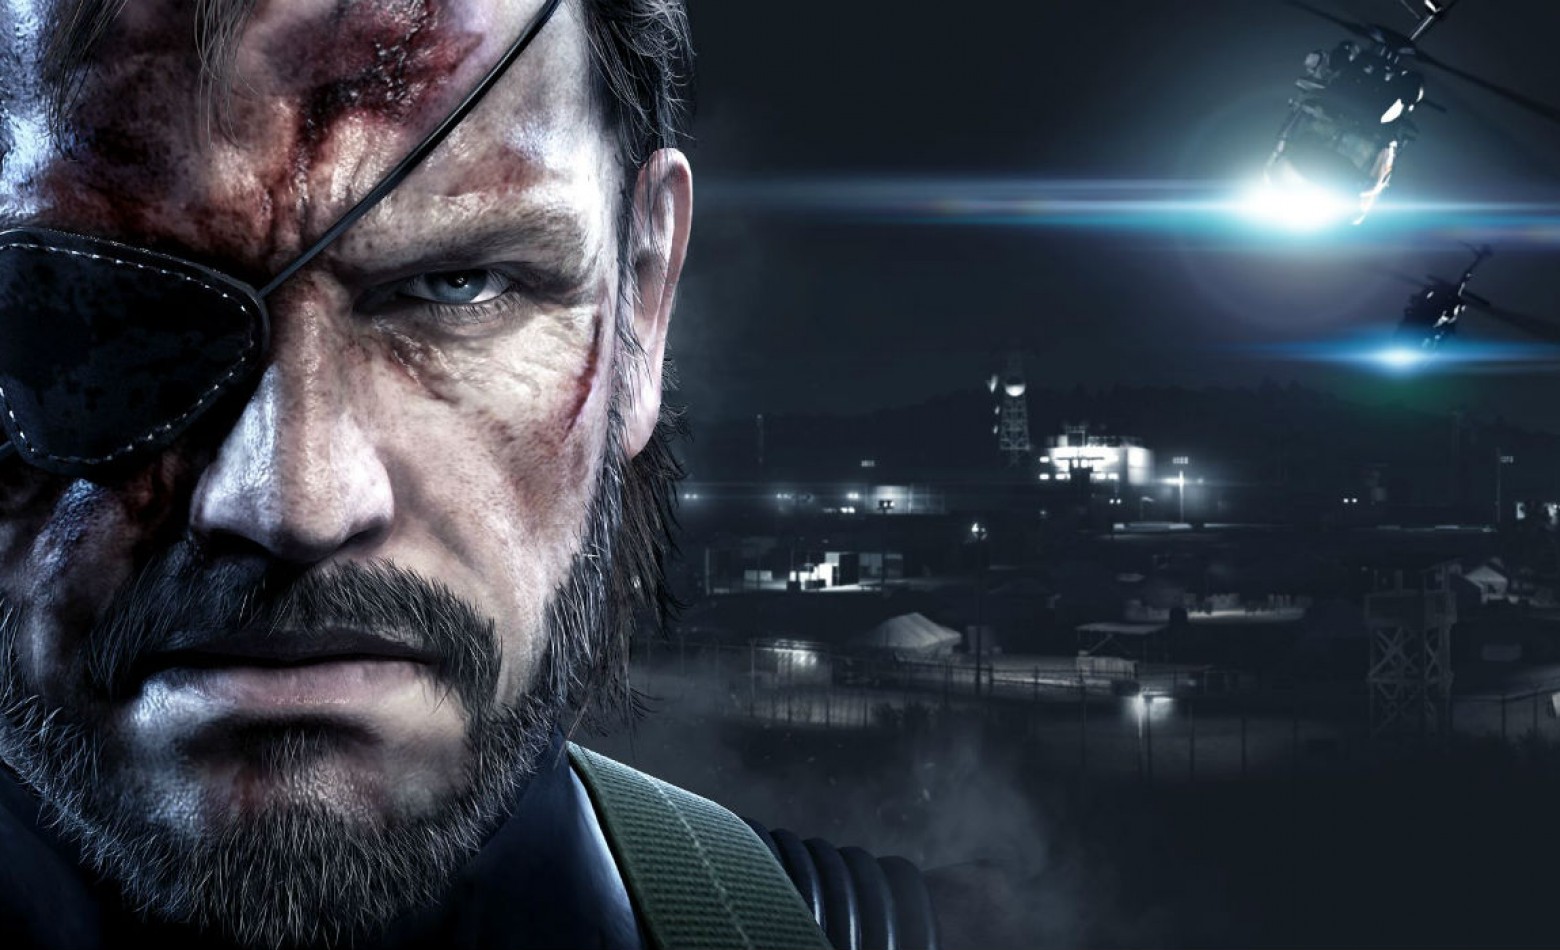 Jogatina gratuita – é a vez de Metal Gear Solid 5: Ground Zeroes ao vivo